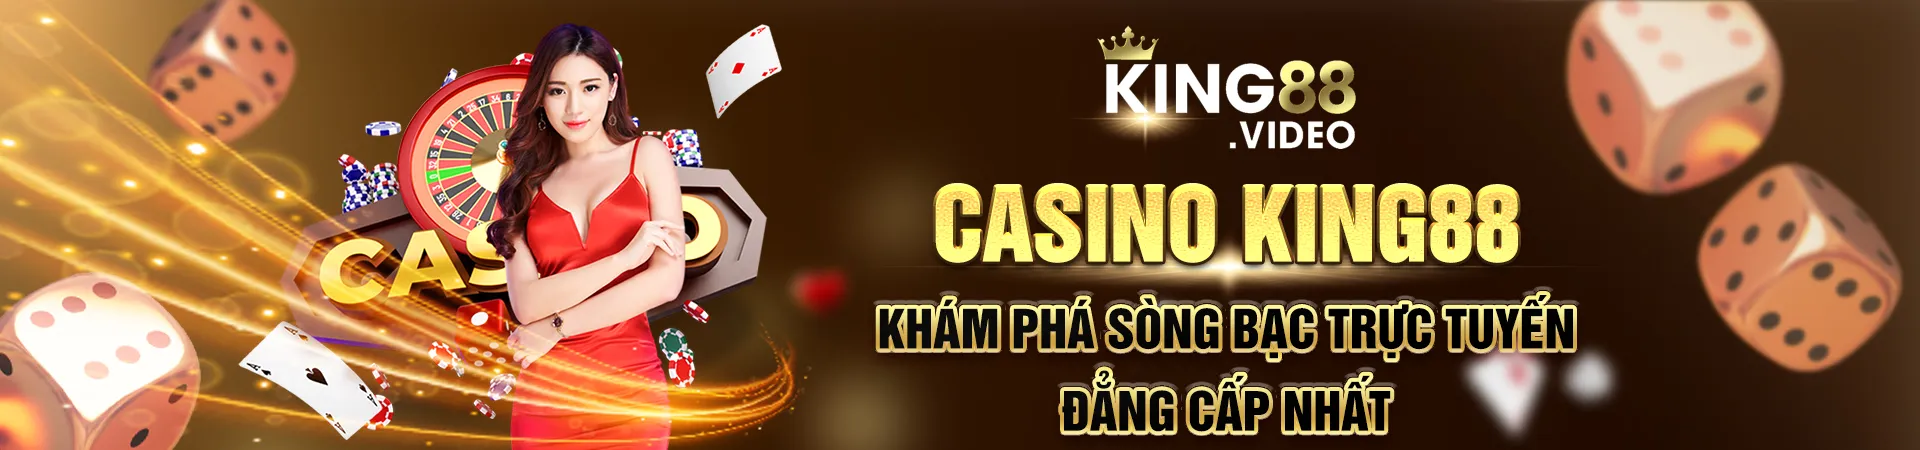 casino king88